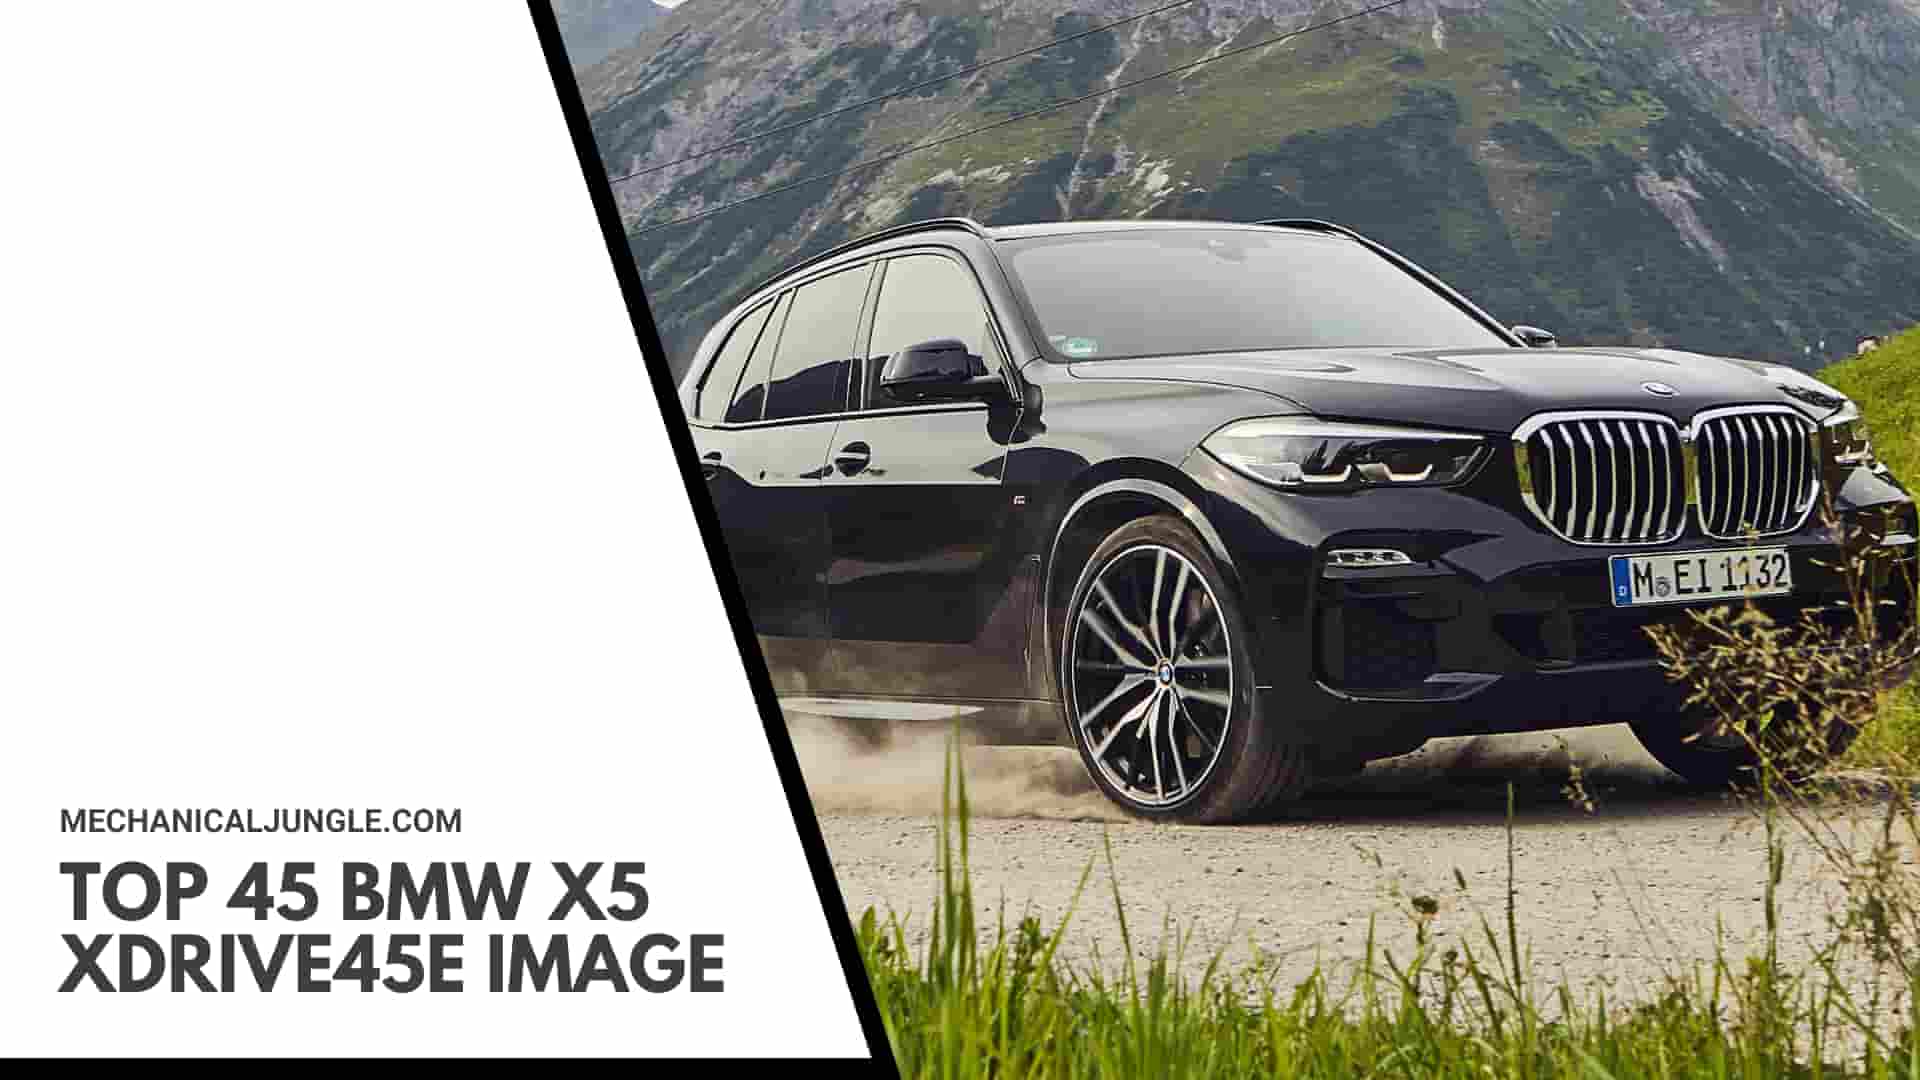 Top 45 BMW X5 xDrive45e Image